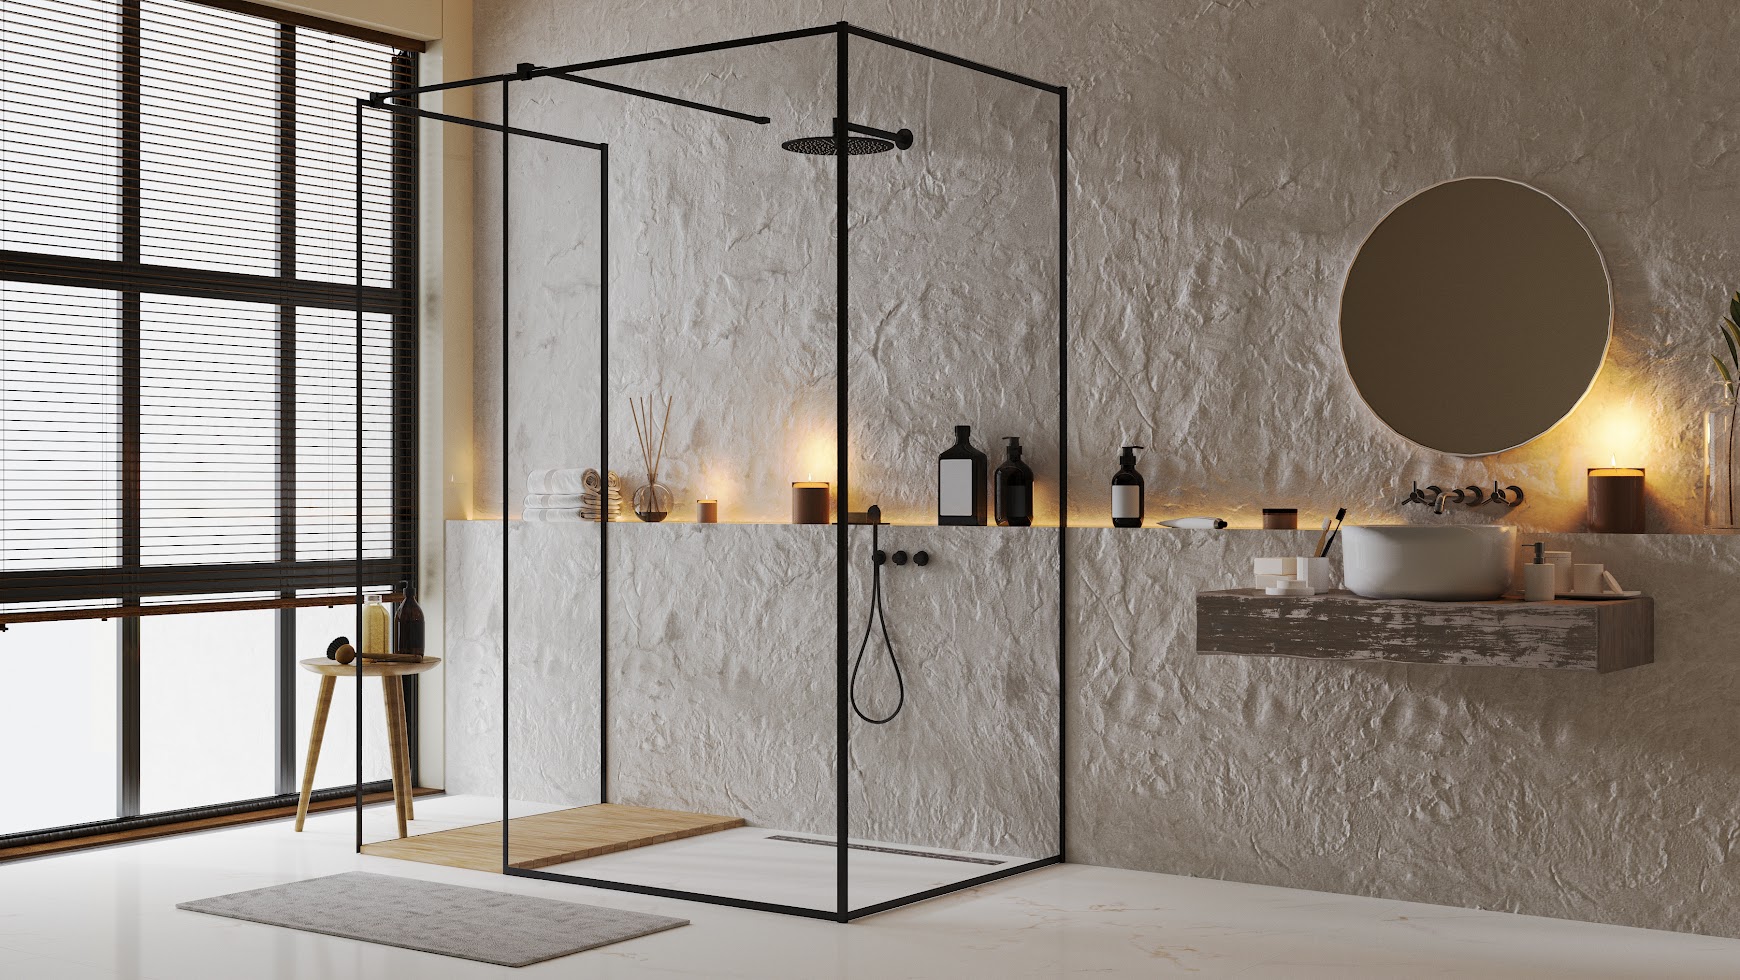 Mobiliario de baño: estilo y funcionalidad para espacios modernos